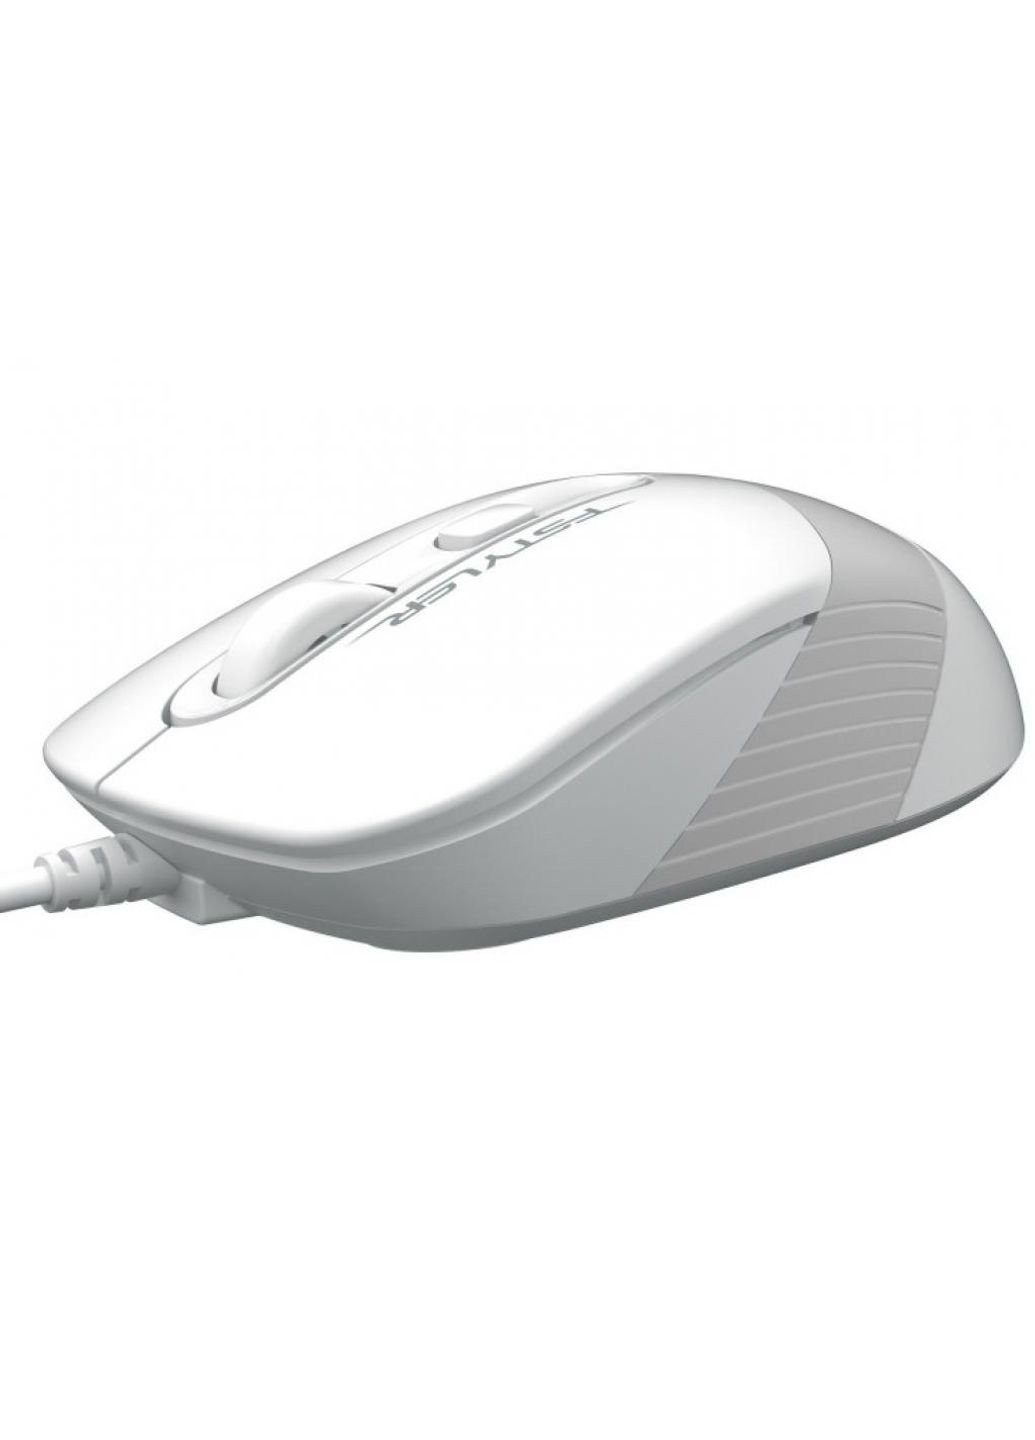 Мышка FM10S White A4Tech (252633443)